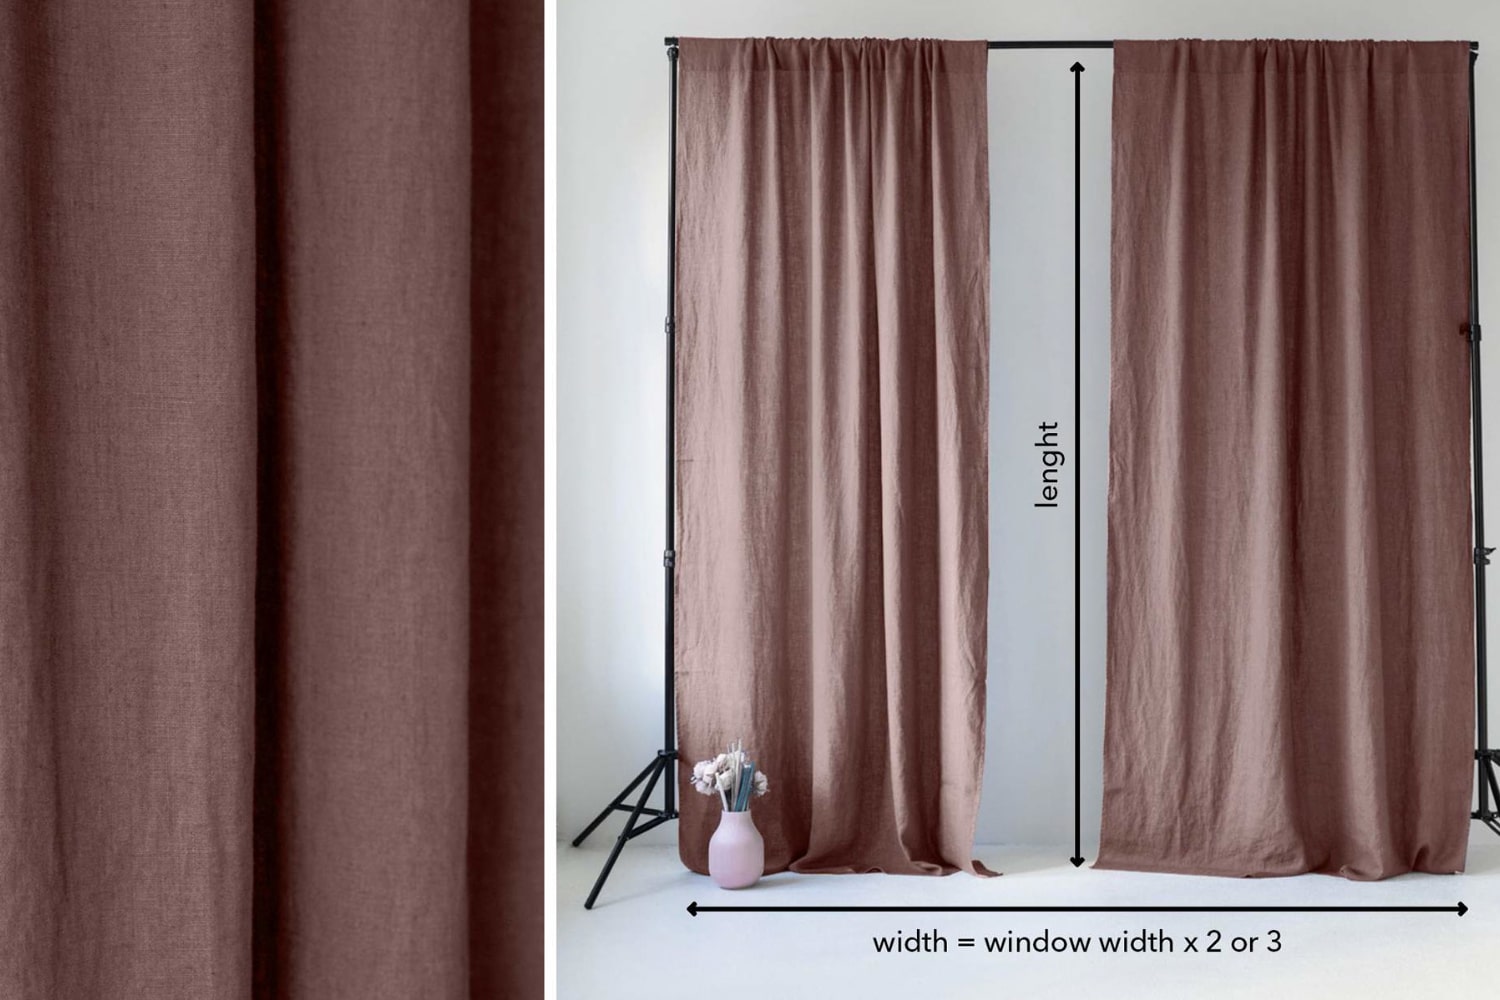 curtains measurement